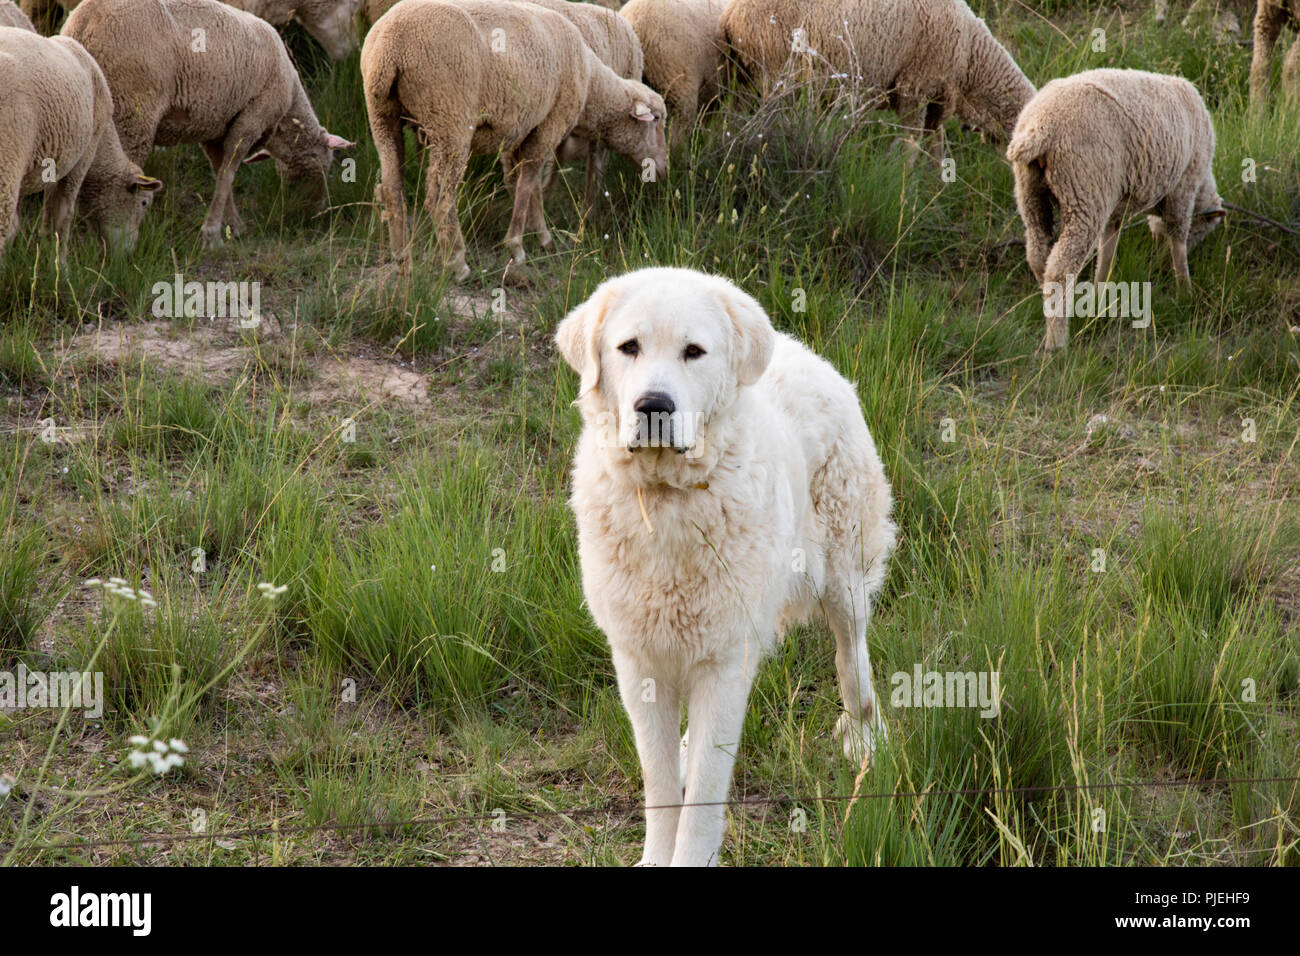 great pyrenees guard sheep